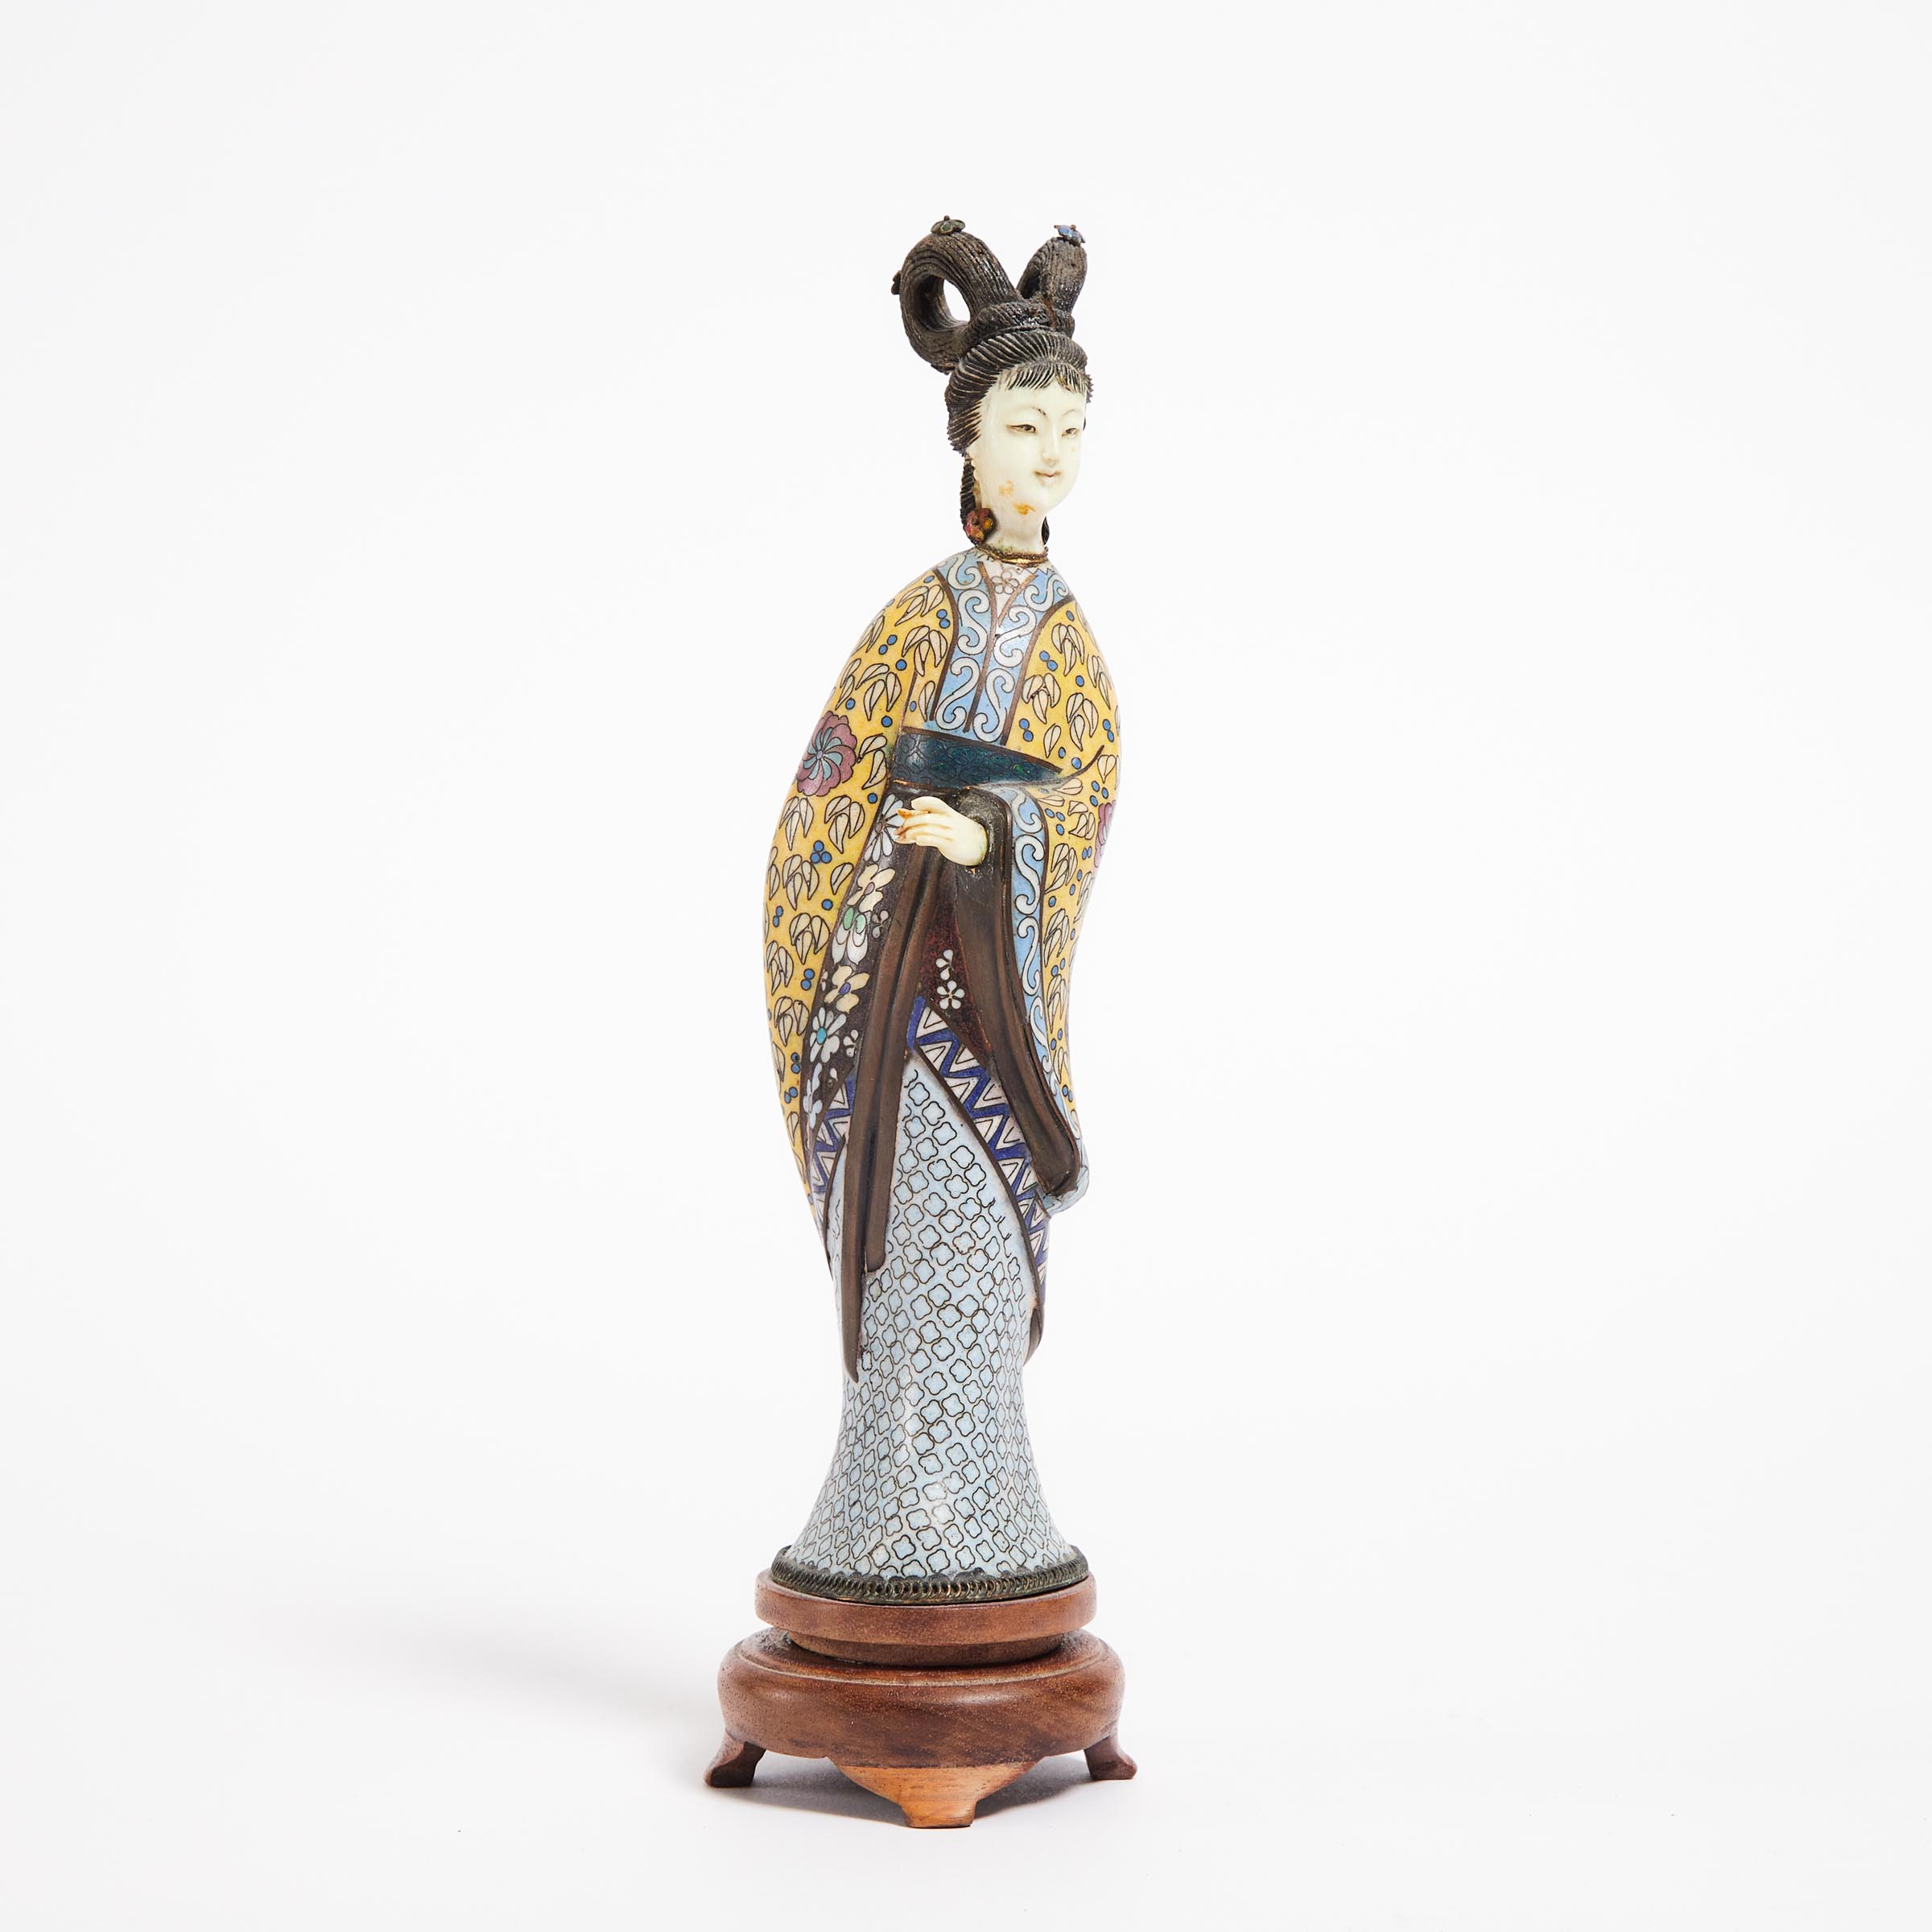 A Cloisonné Enamel and Ivory Figure